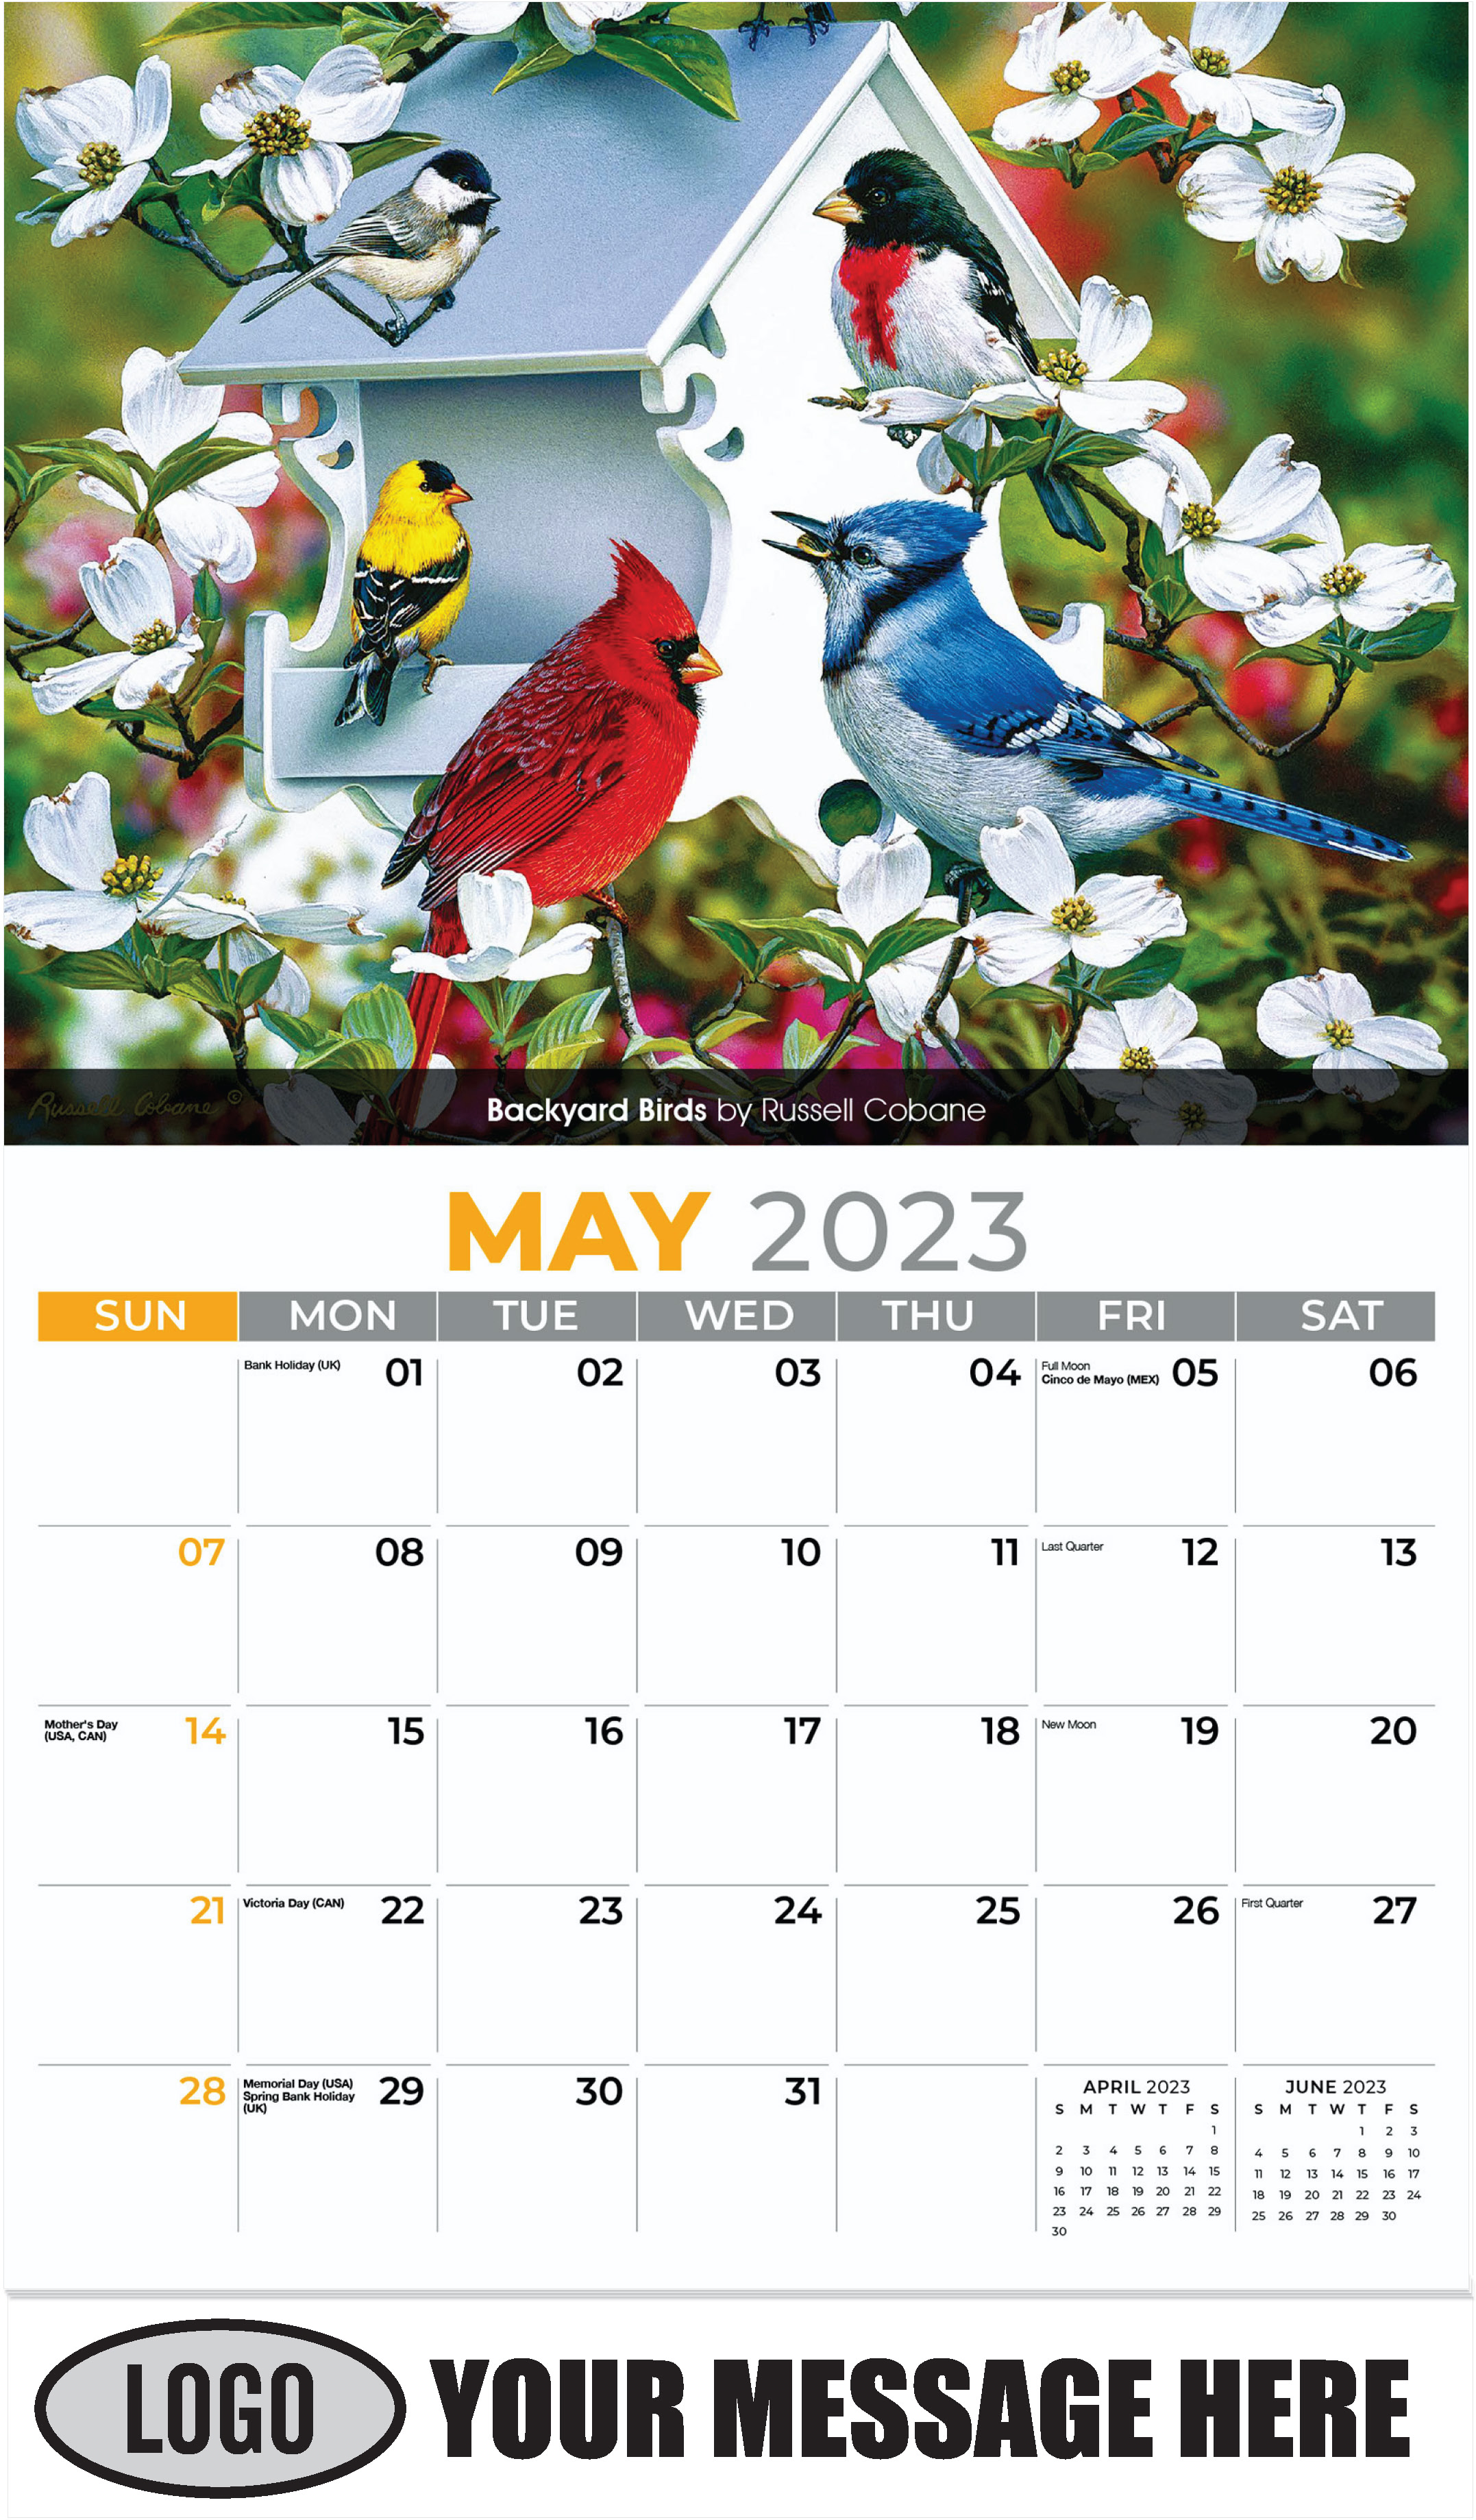 Backyard birds by Russell Cobane - May - Garden Birds 2023 Promotional Calendar